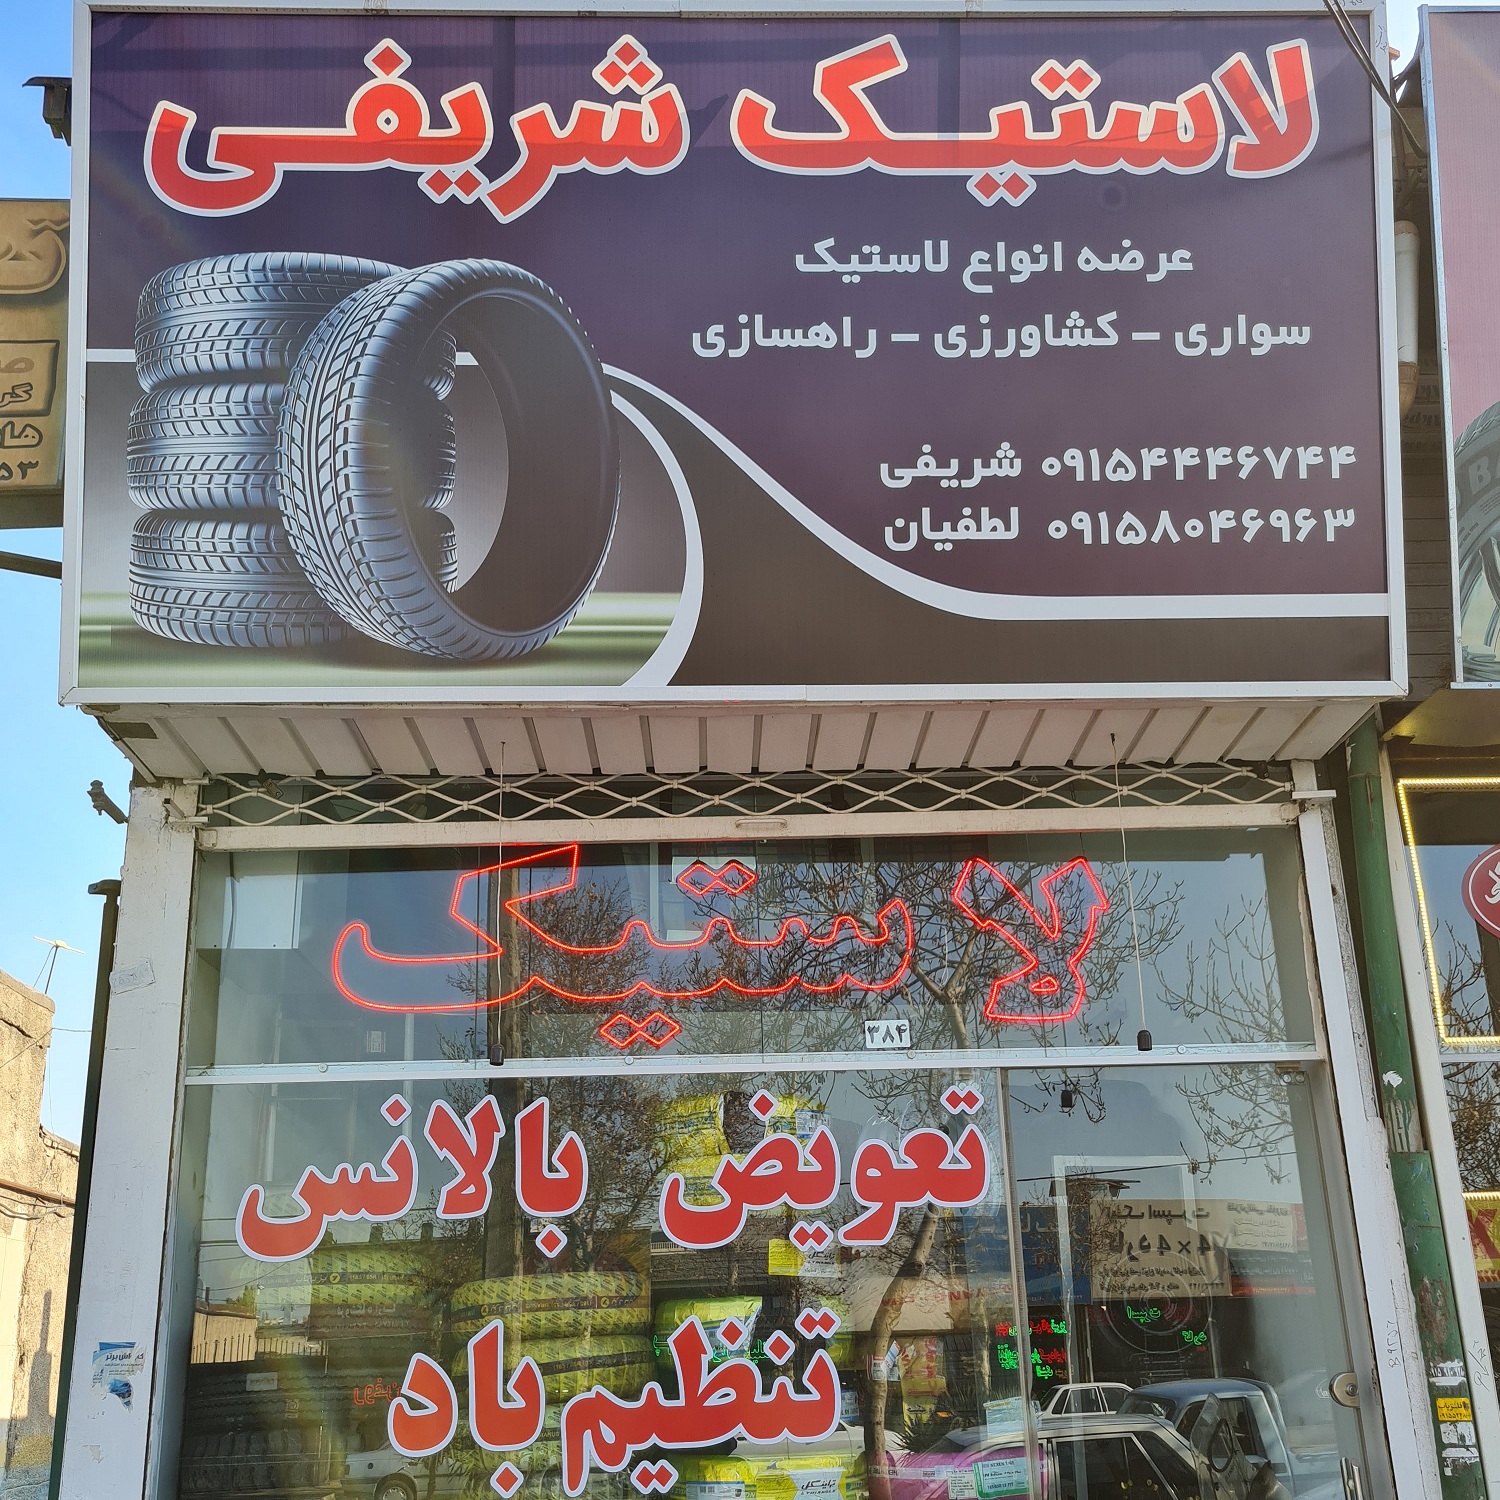 فروشگاه لاستیک شریفی